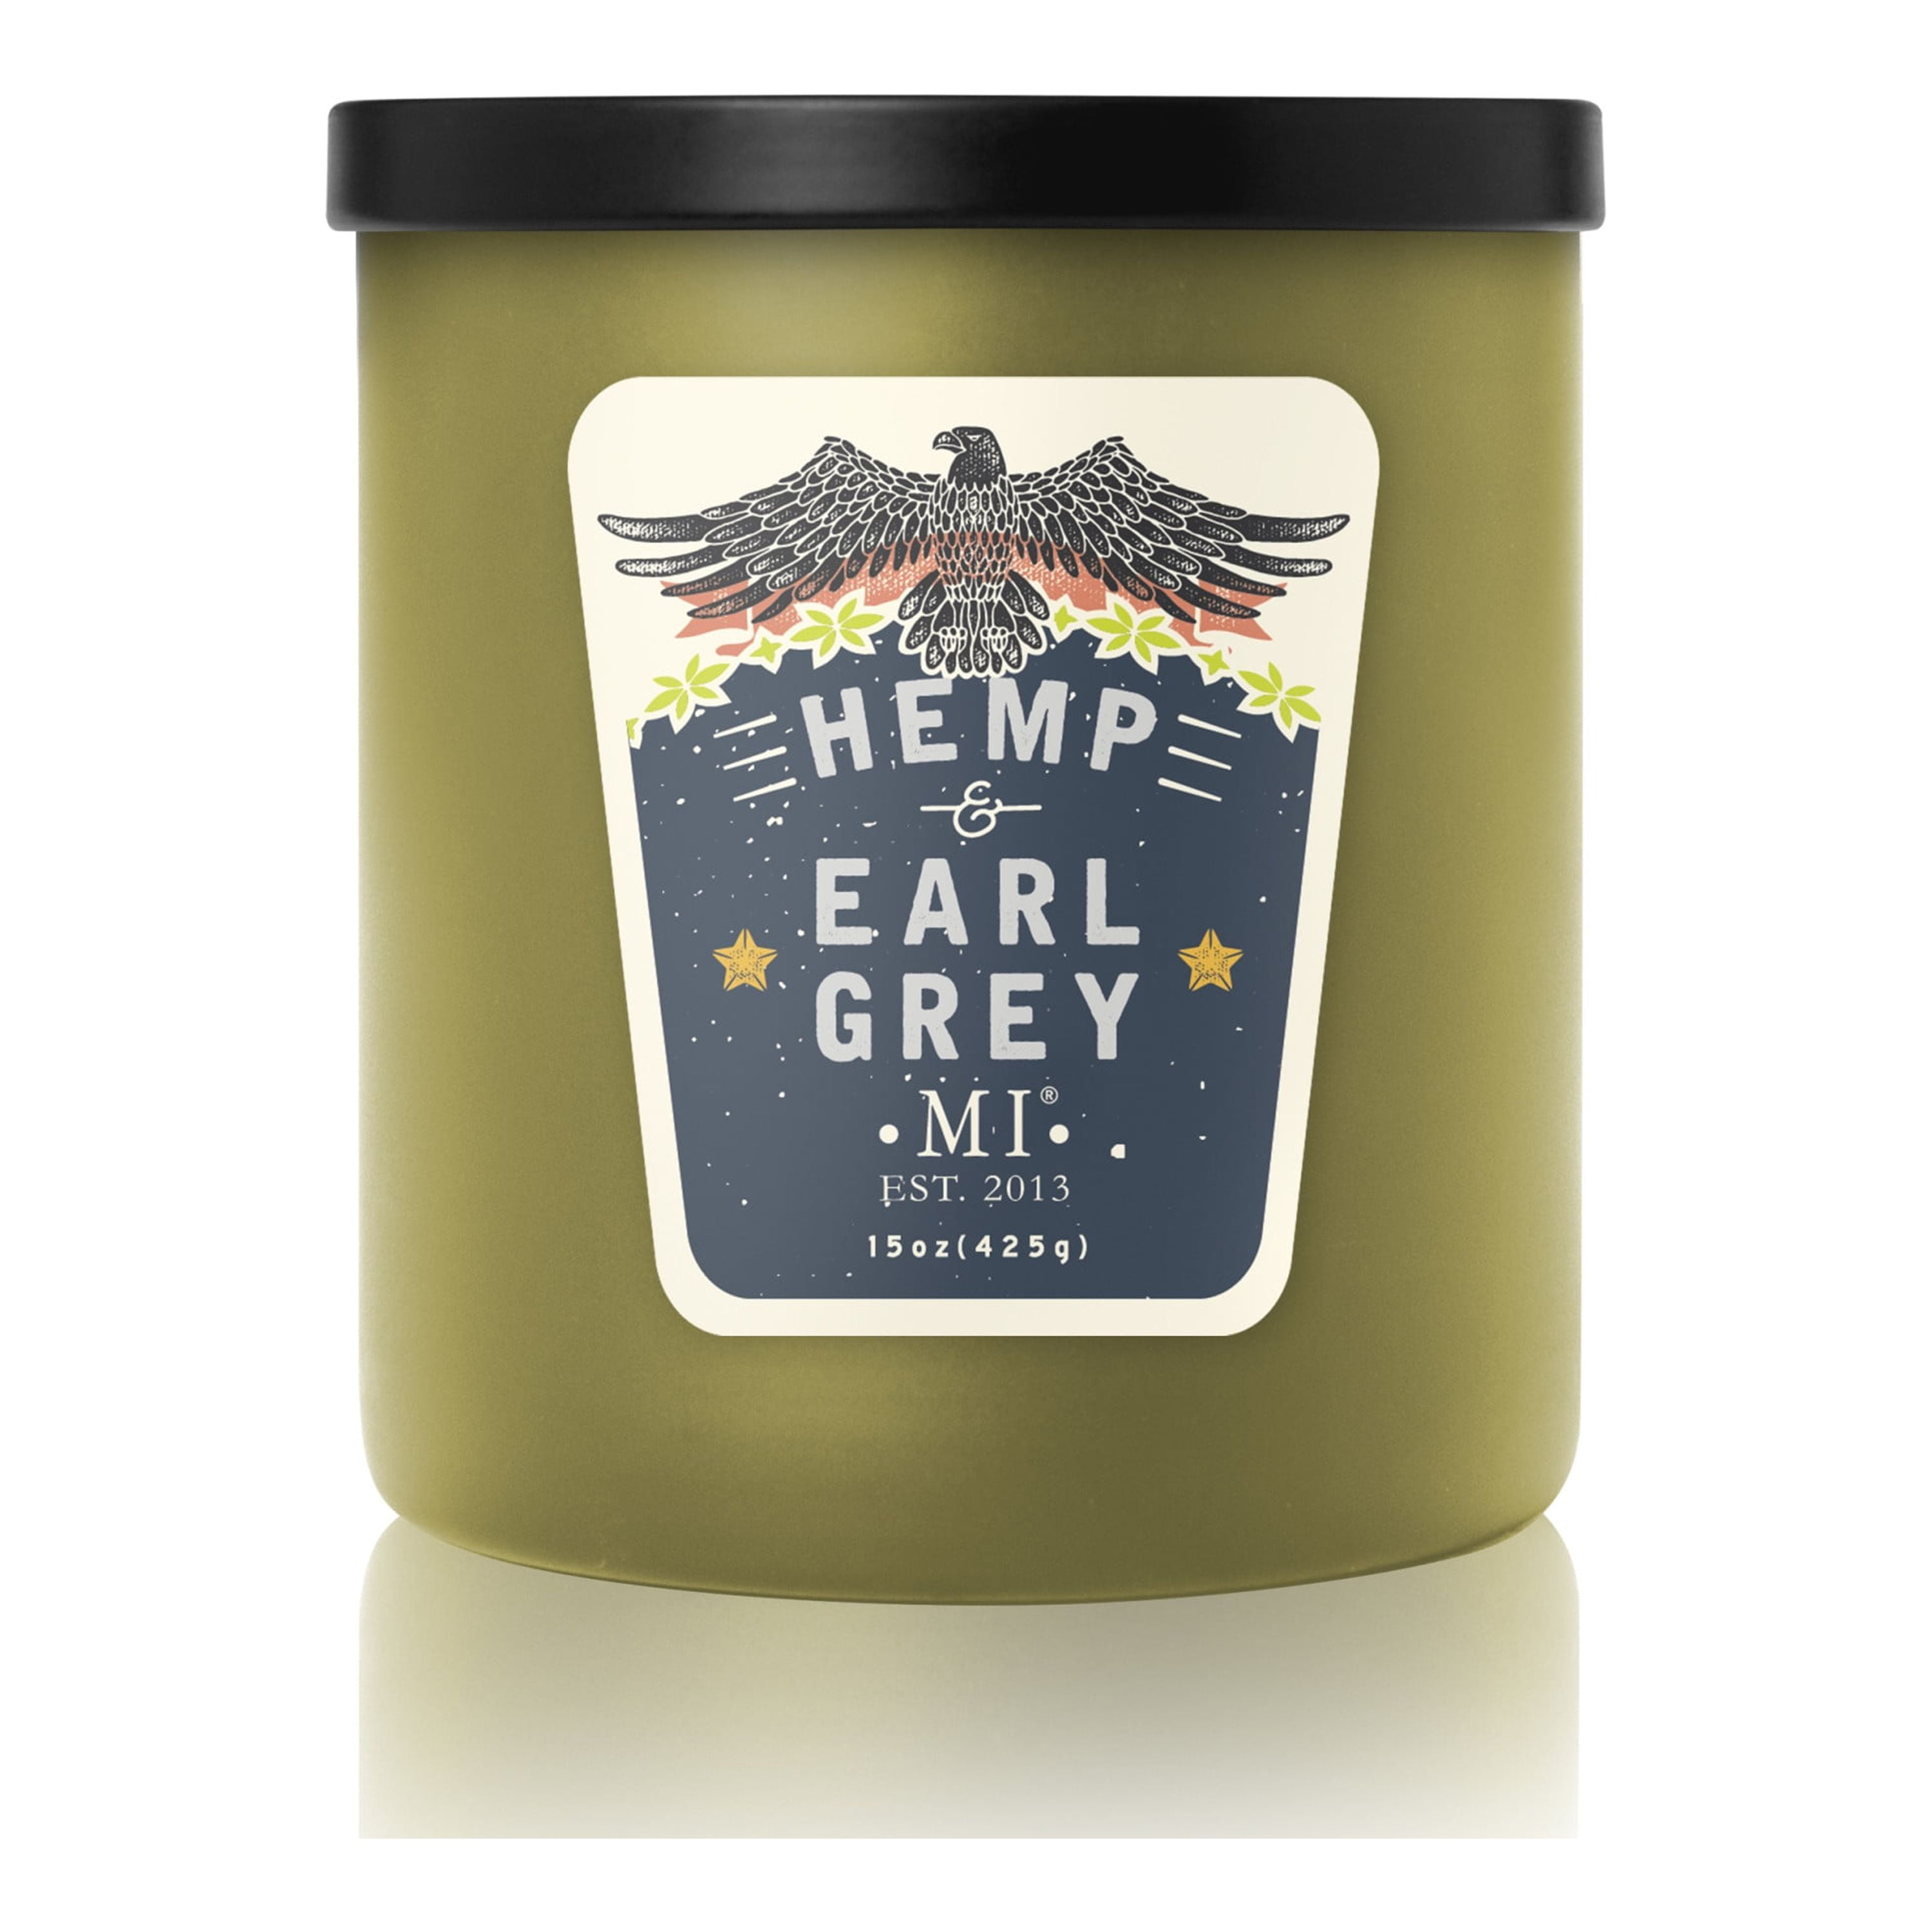 Earl Grey Tea Fragrance Oil – Candle Chemistry